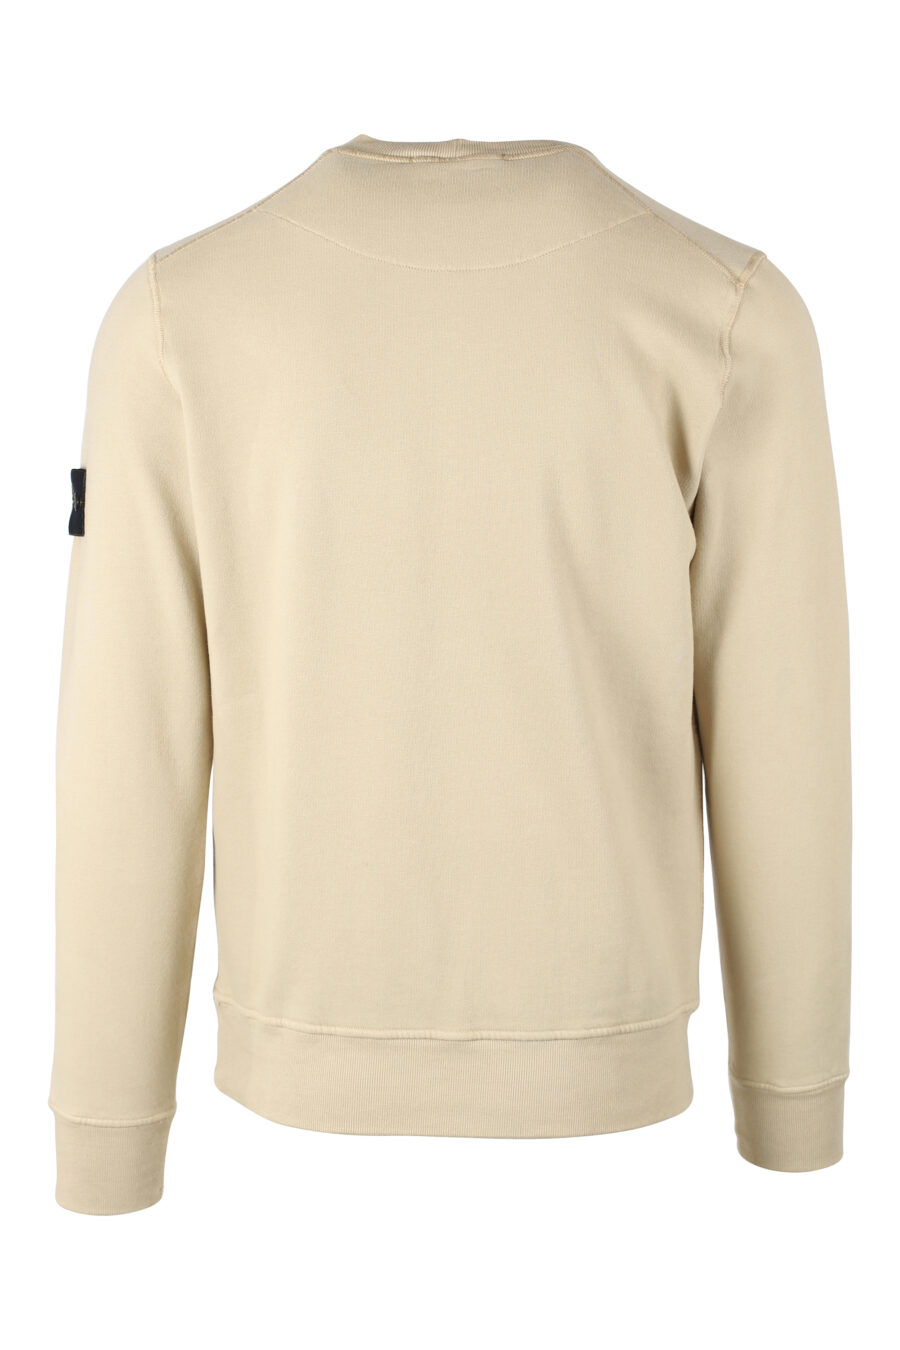 Beigefarbenes Sweatshirt mit seitlichem Logoaufnäher - IMG 8354